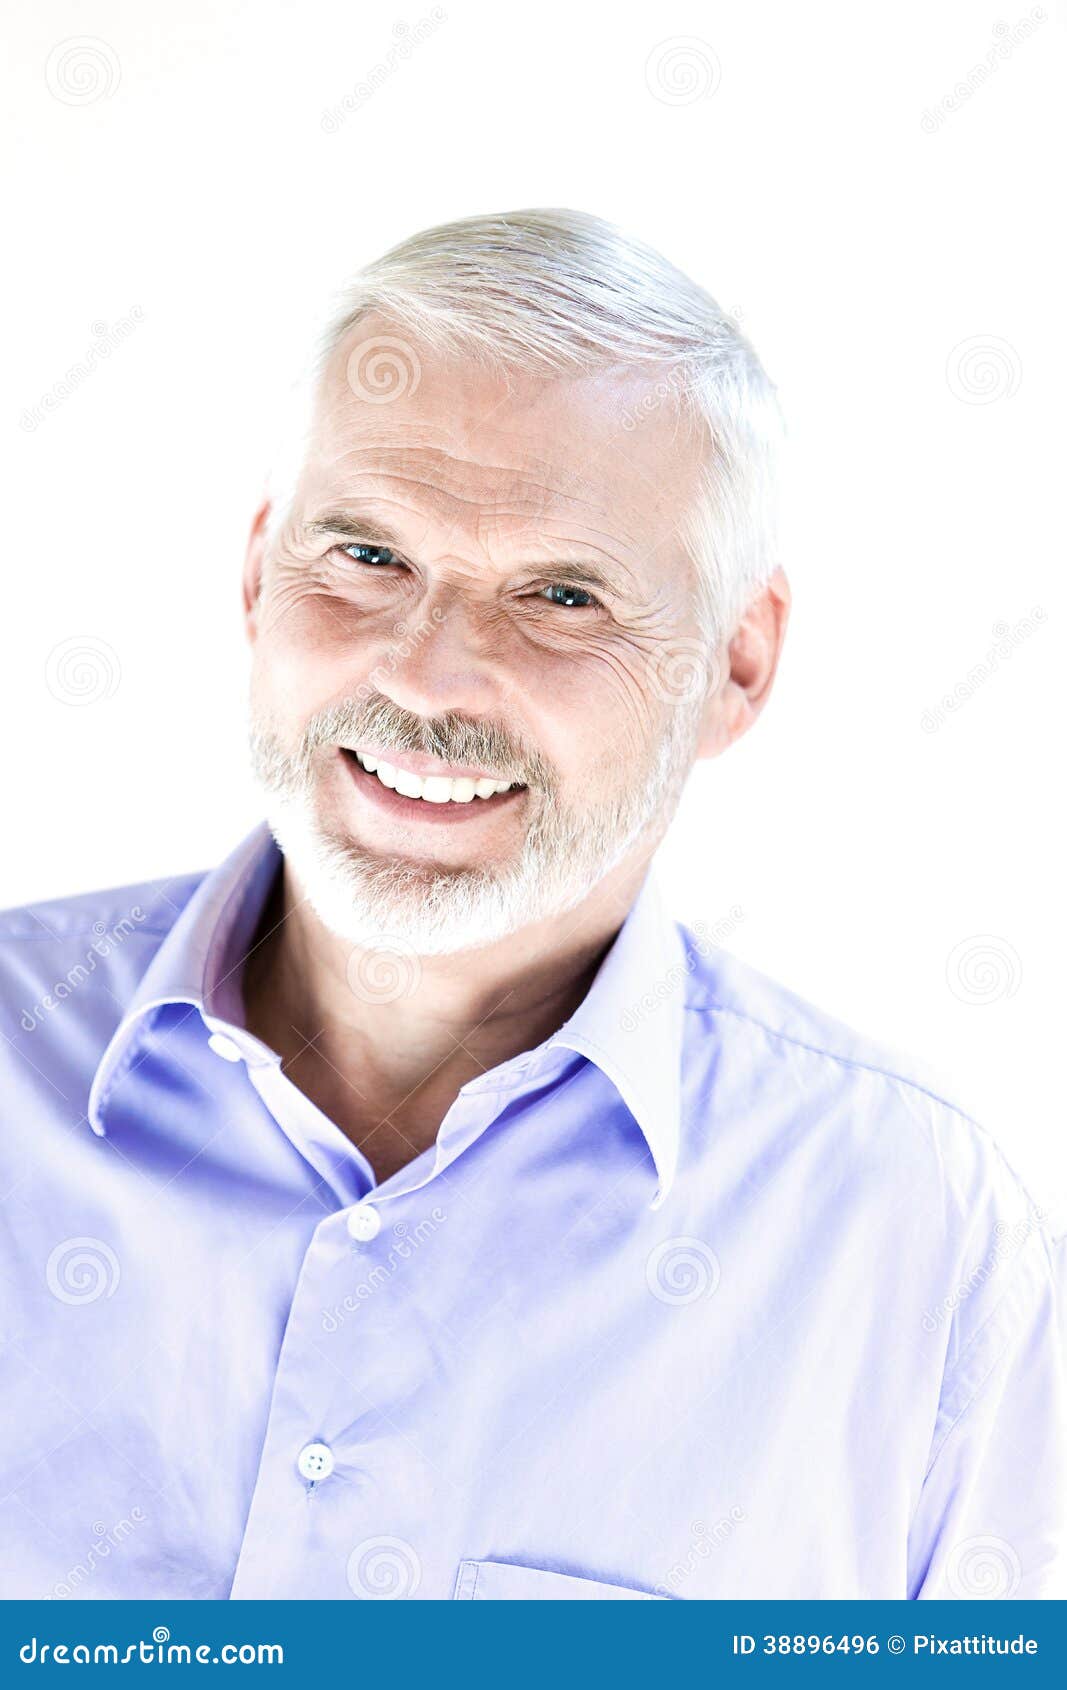 senior man portrait toothy smile